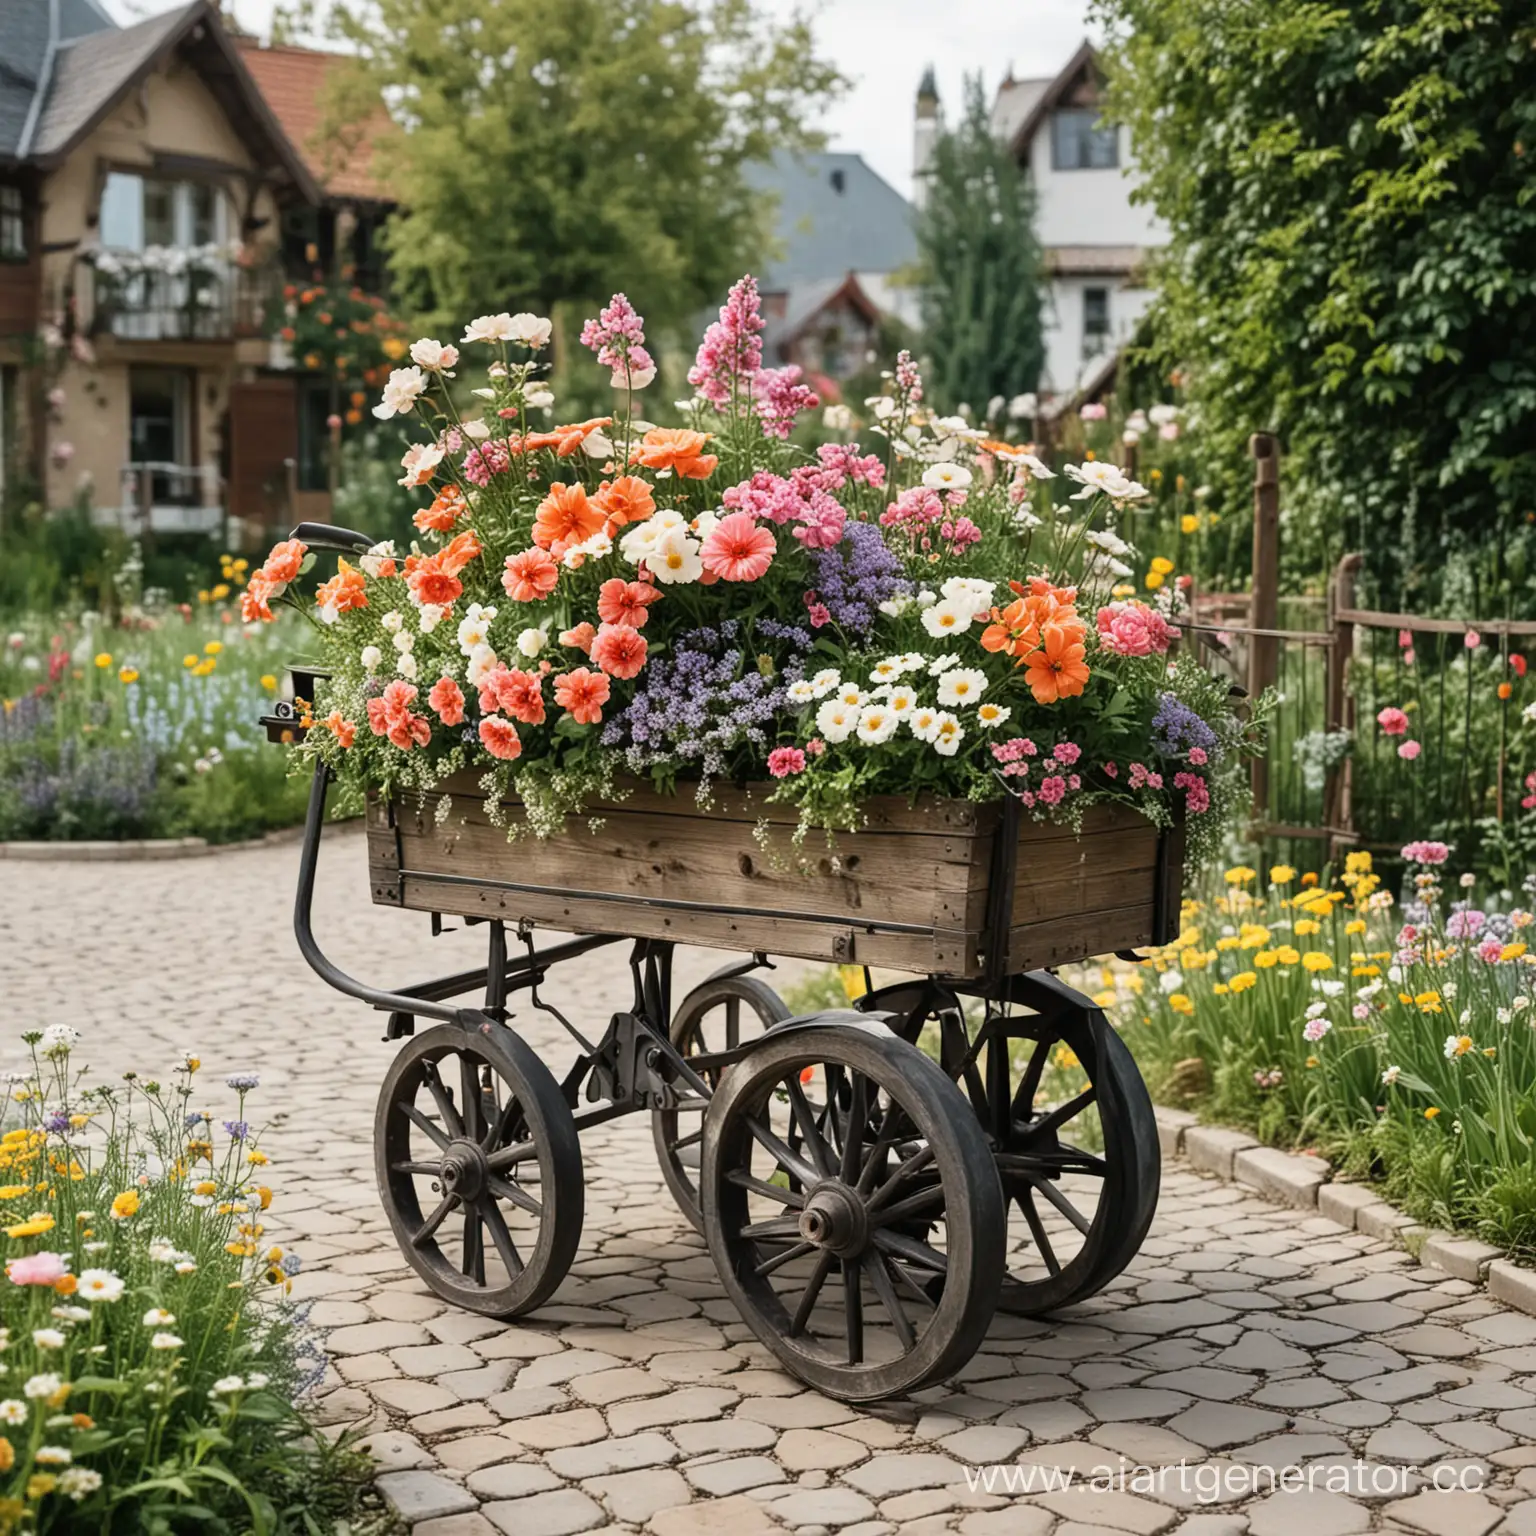 Vibrant-Flower-Cart-in-a-Lush-Garden-Setting